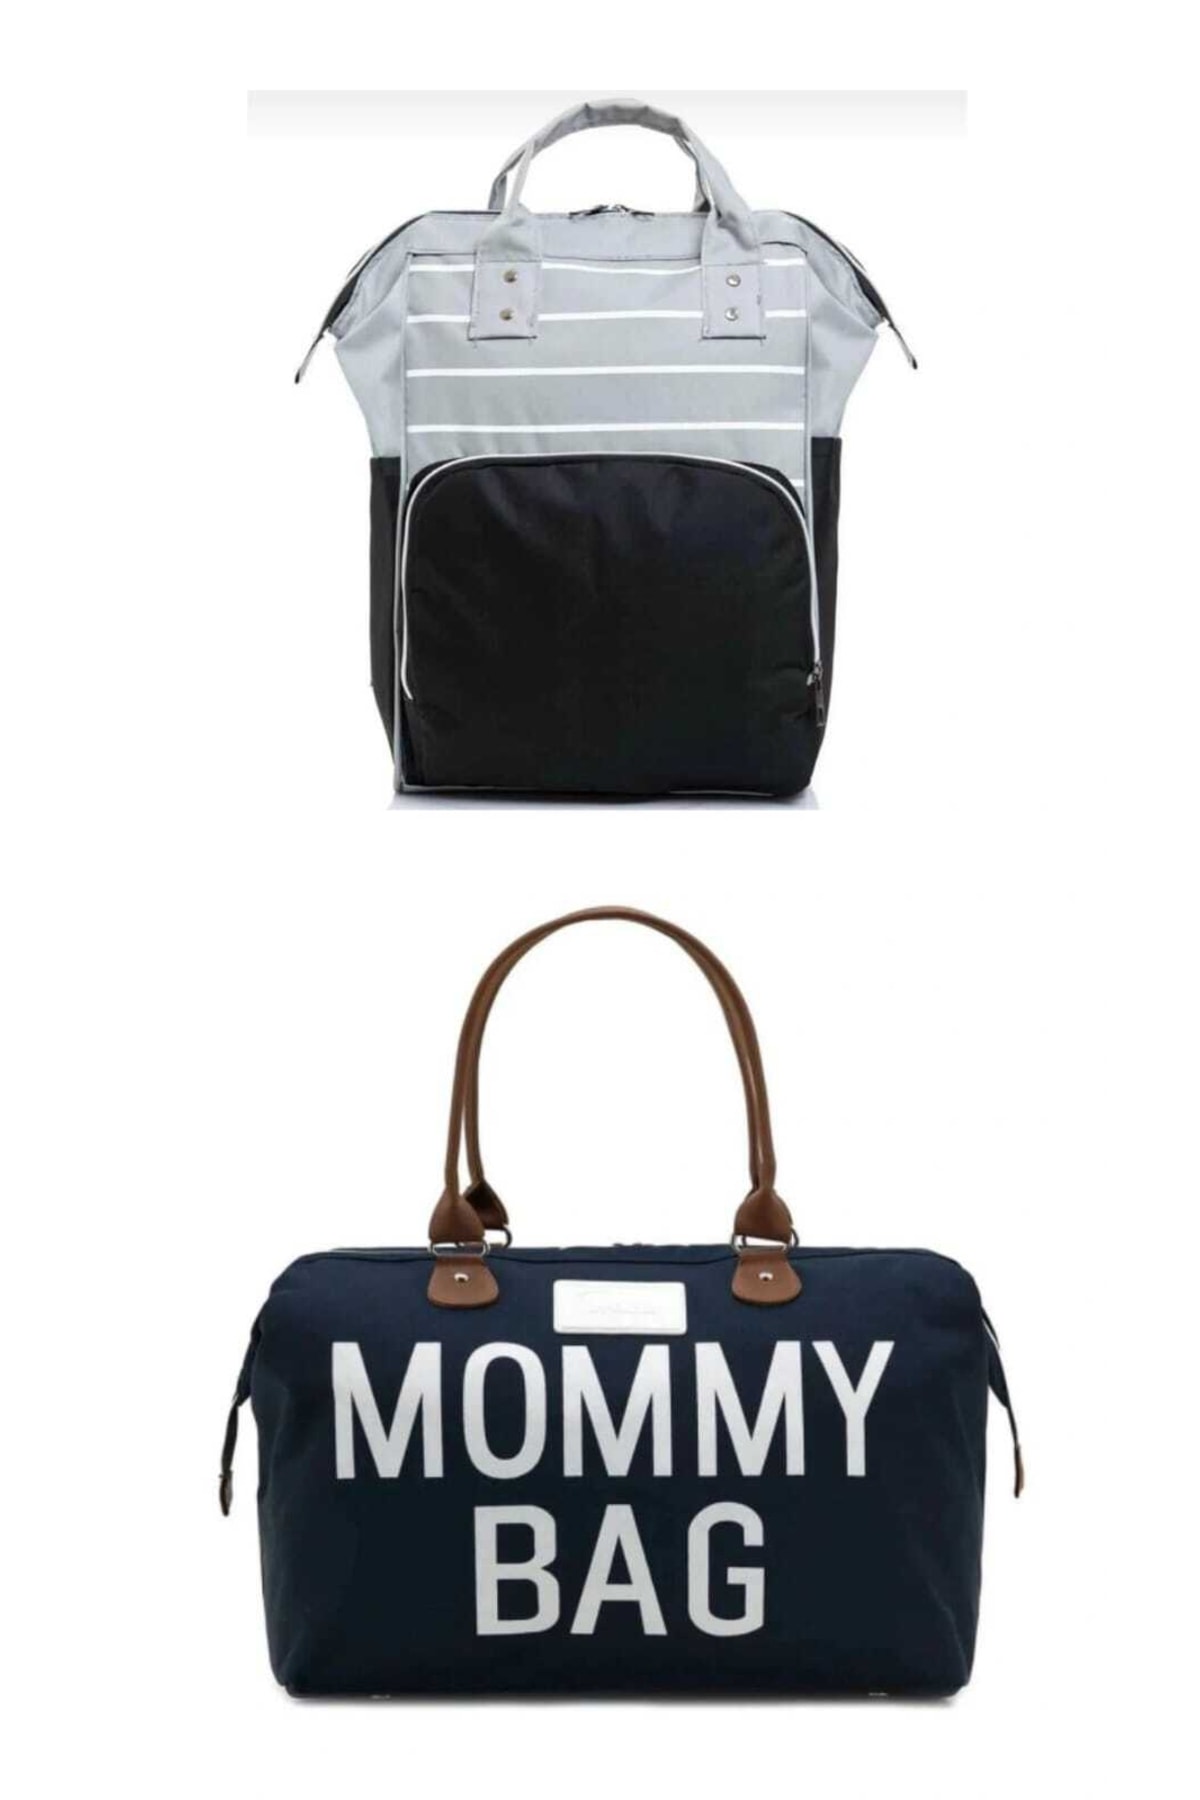 Lui Baby Mommy Bag Bebek Çantası Ve Anne Bebek Bakım Çantası